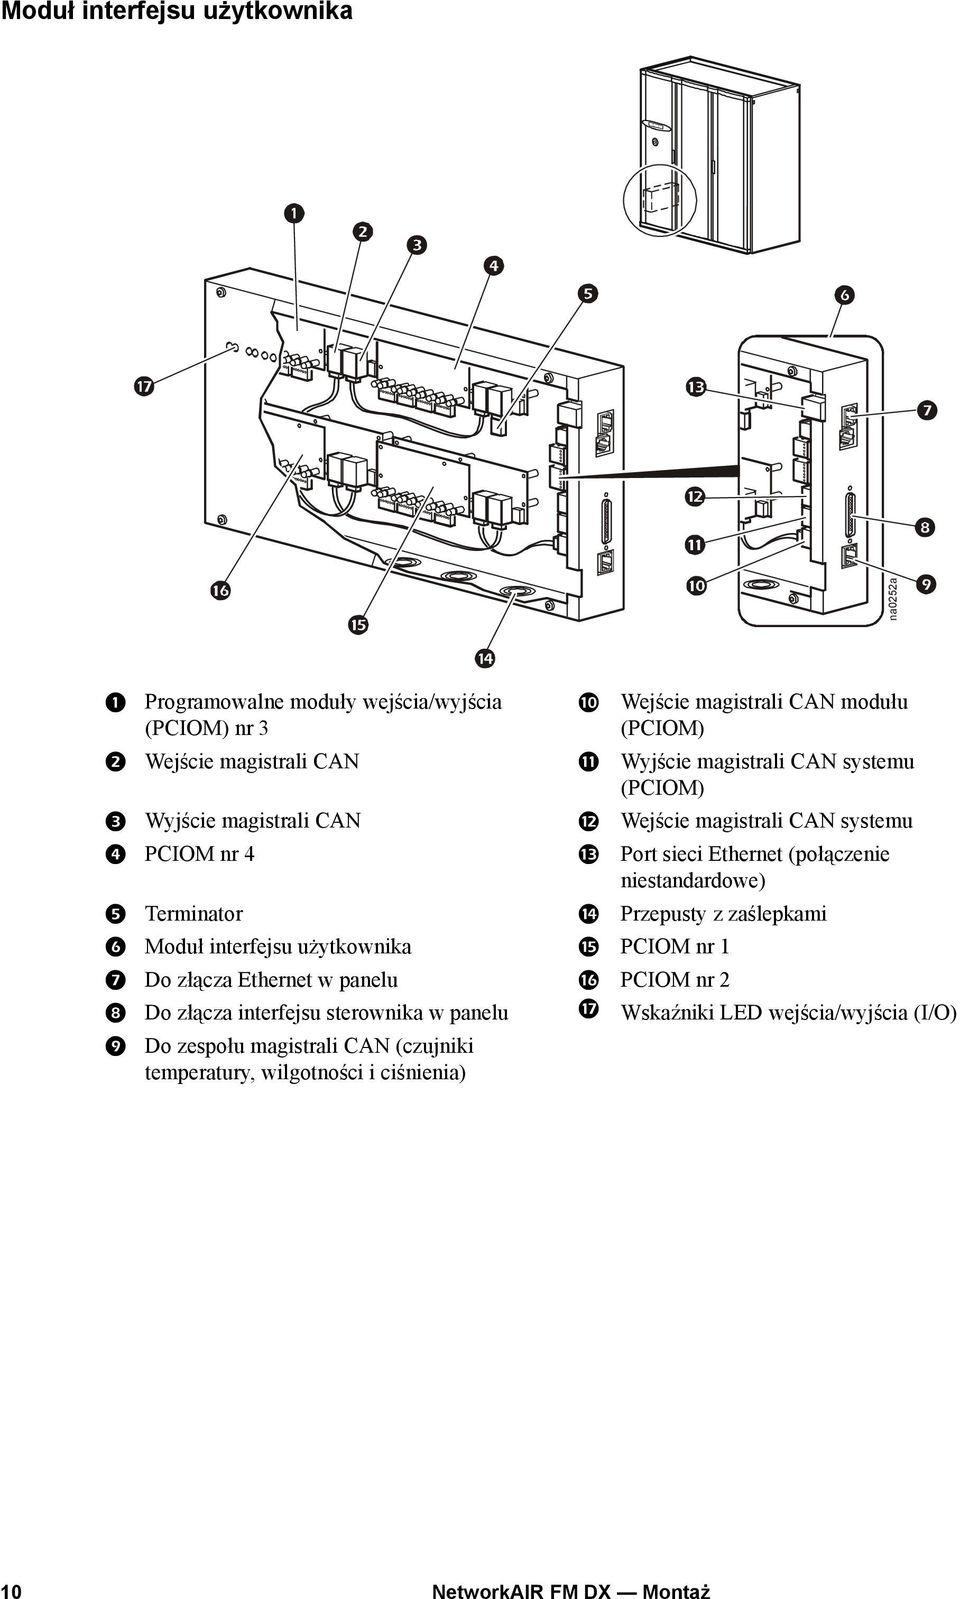 (połączenie niestandardowe) Terminator Przepusty z zaślepkami Moduł interfejsu użytkownika PCIOM nr 1 Do złącza Ethernet w panelu PCIOM nr 2